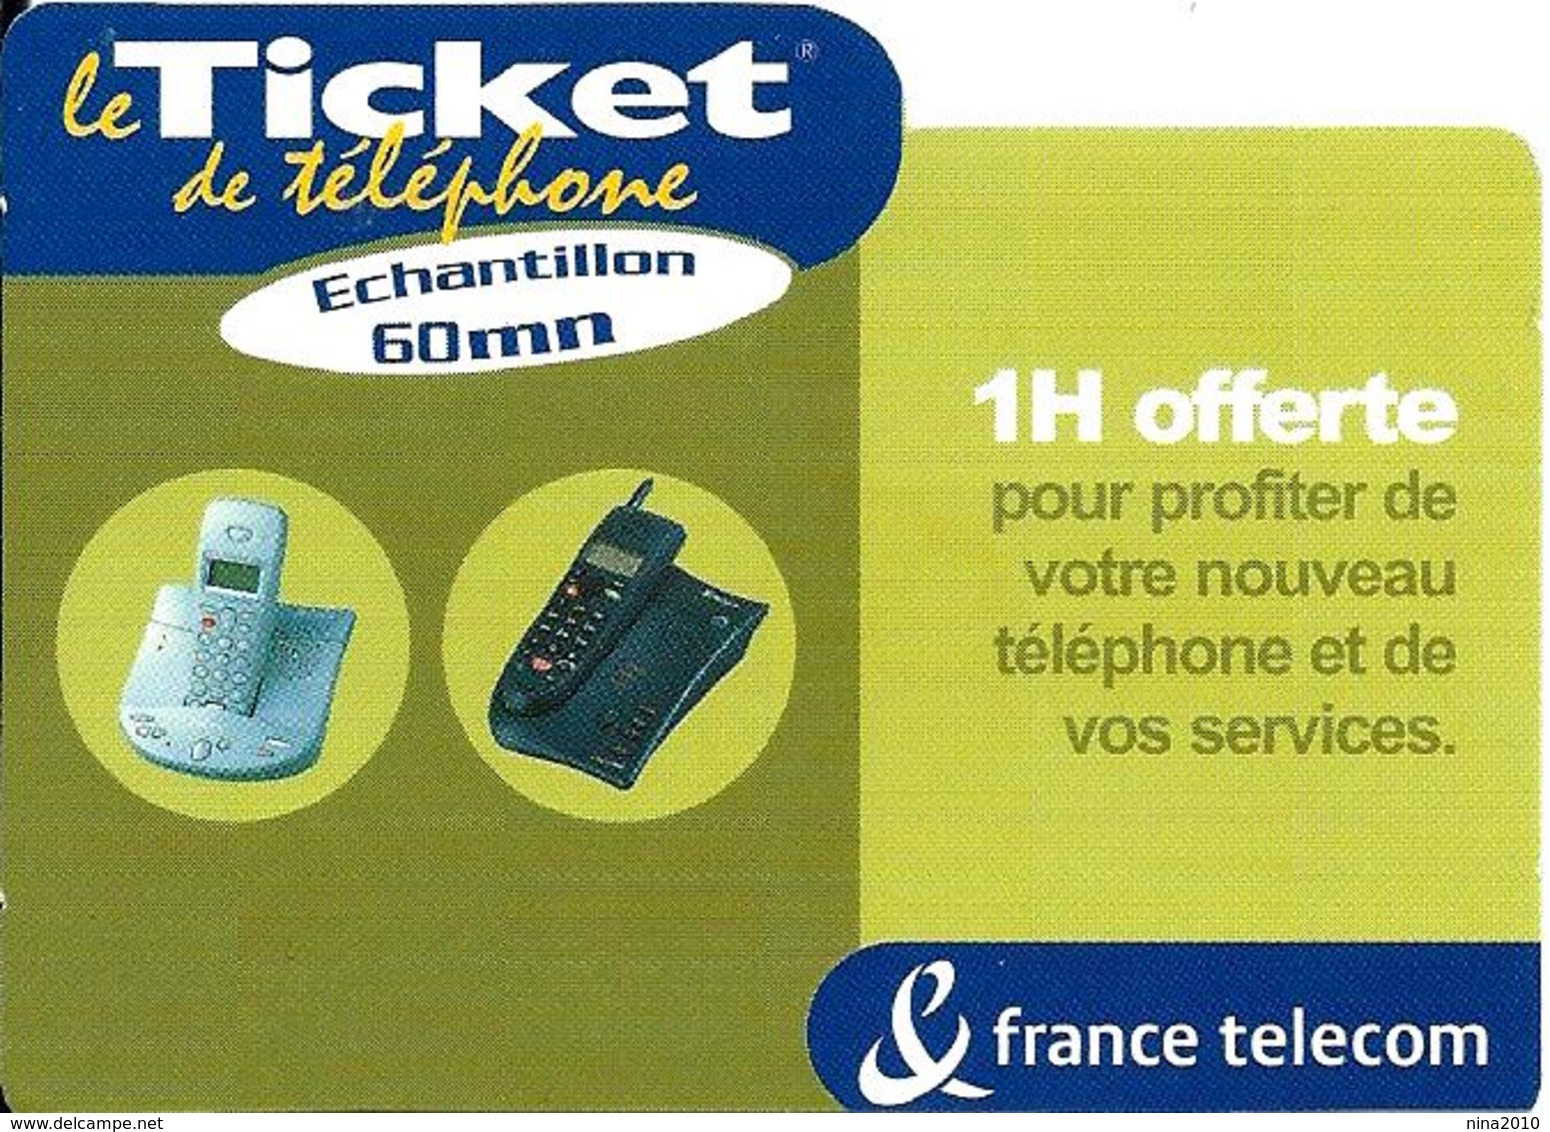 Ticket De Téléphone Privé - 1 H Offerte - 60 000 Ex. (luxe) - 15/11/2002 - Billetes FT